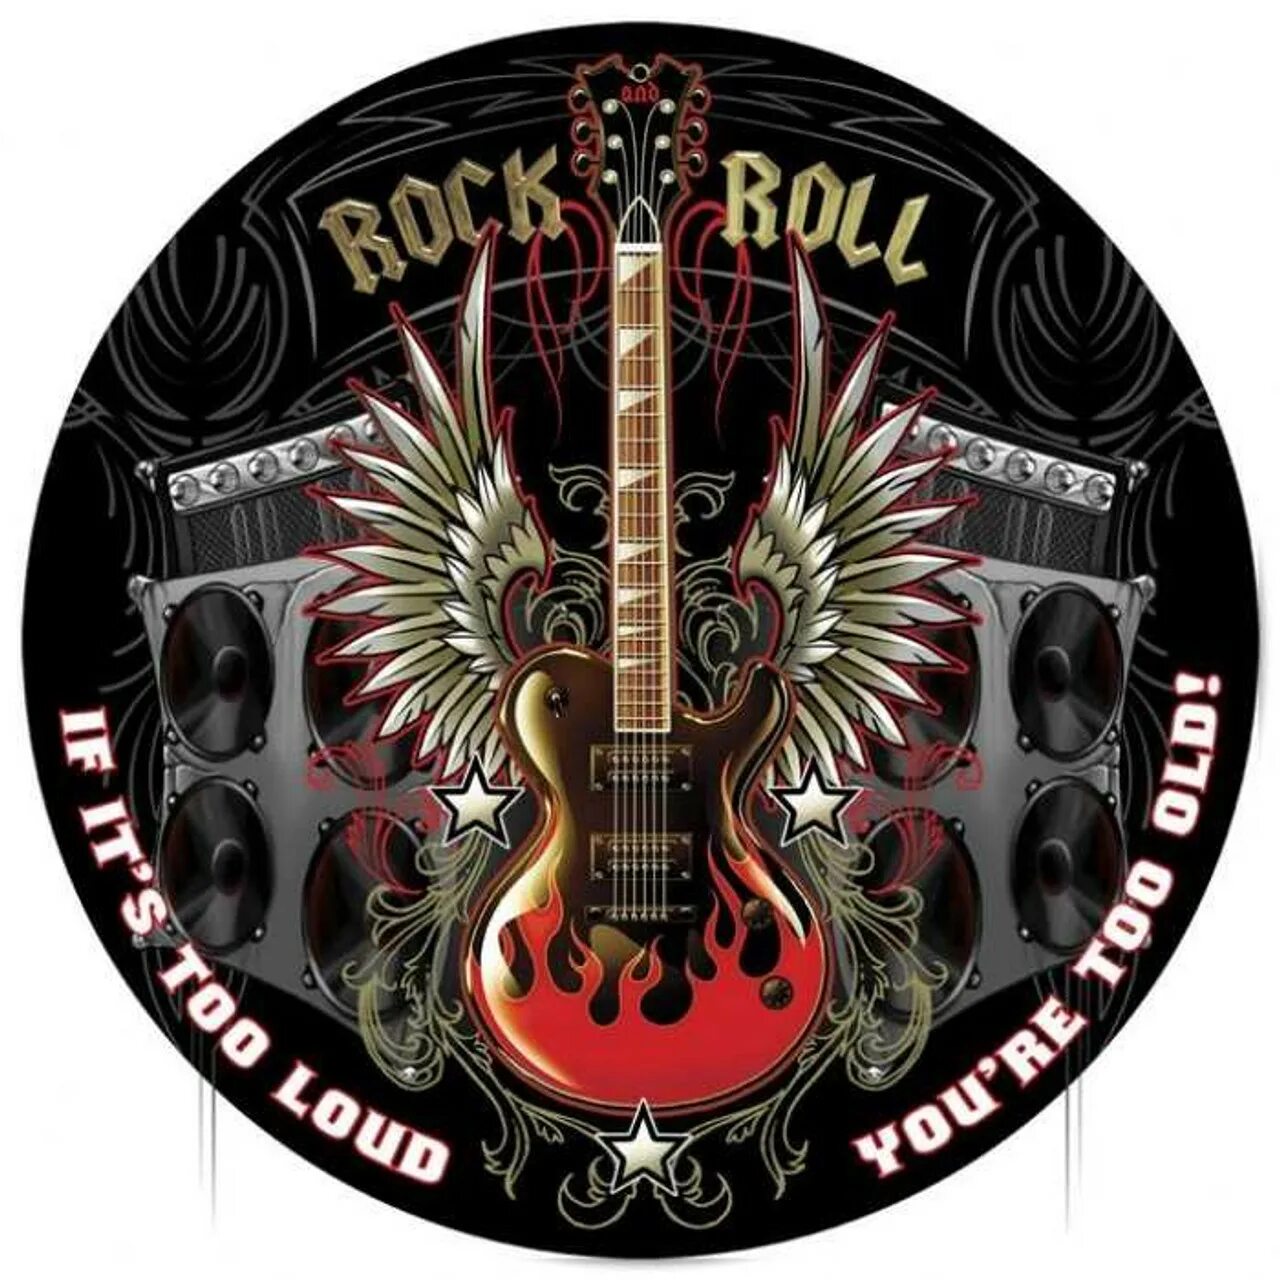 Зарубежный рок ролл. Рок. Логотип в стиле рок. Рок-н-ролл. Постер в стиле рок н ролл.